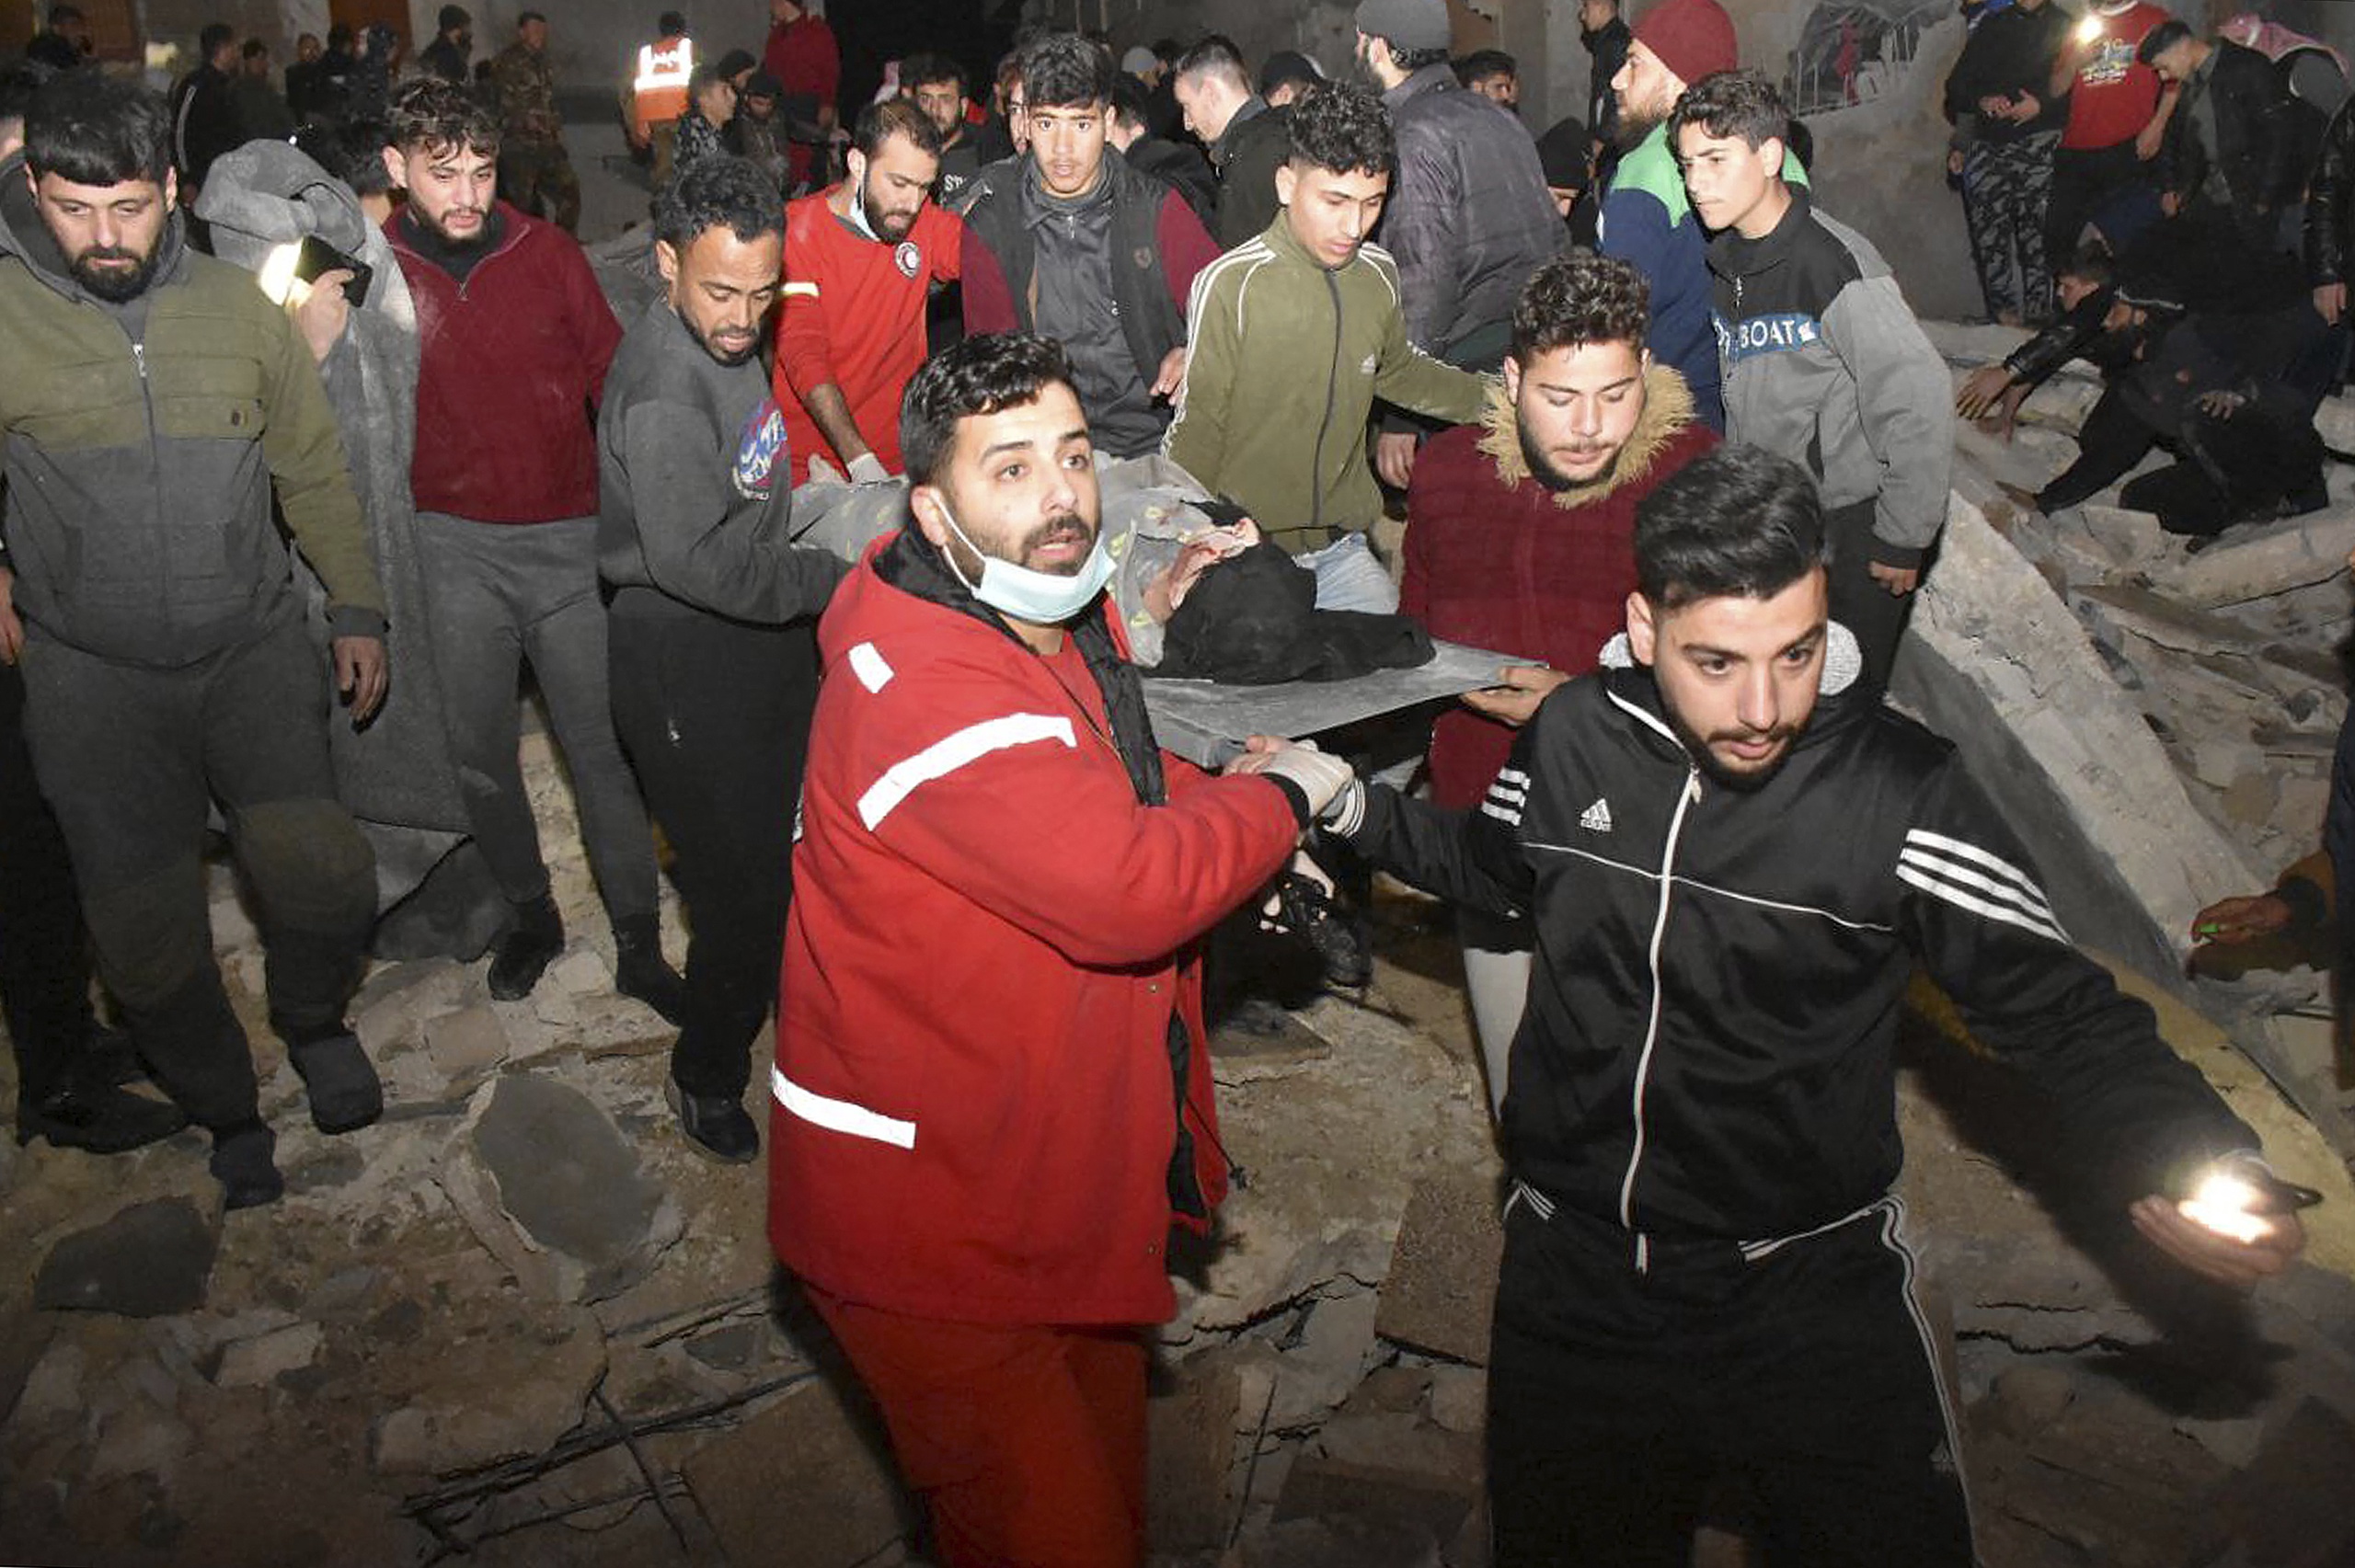 De catastrofale aardbeving die Turkije en Syrië vandaag heeft geraakt heeft steden met de grond gelijk gemaakt, zo constateert correspondent Rena Netjes in Syrië. 'Steden zijn gewoon helemaal ingestort. Het was al slecht daar, maar dit is zo'n beetje het laatste wat die mensen nog kunnen hebben.'